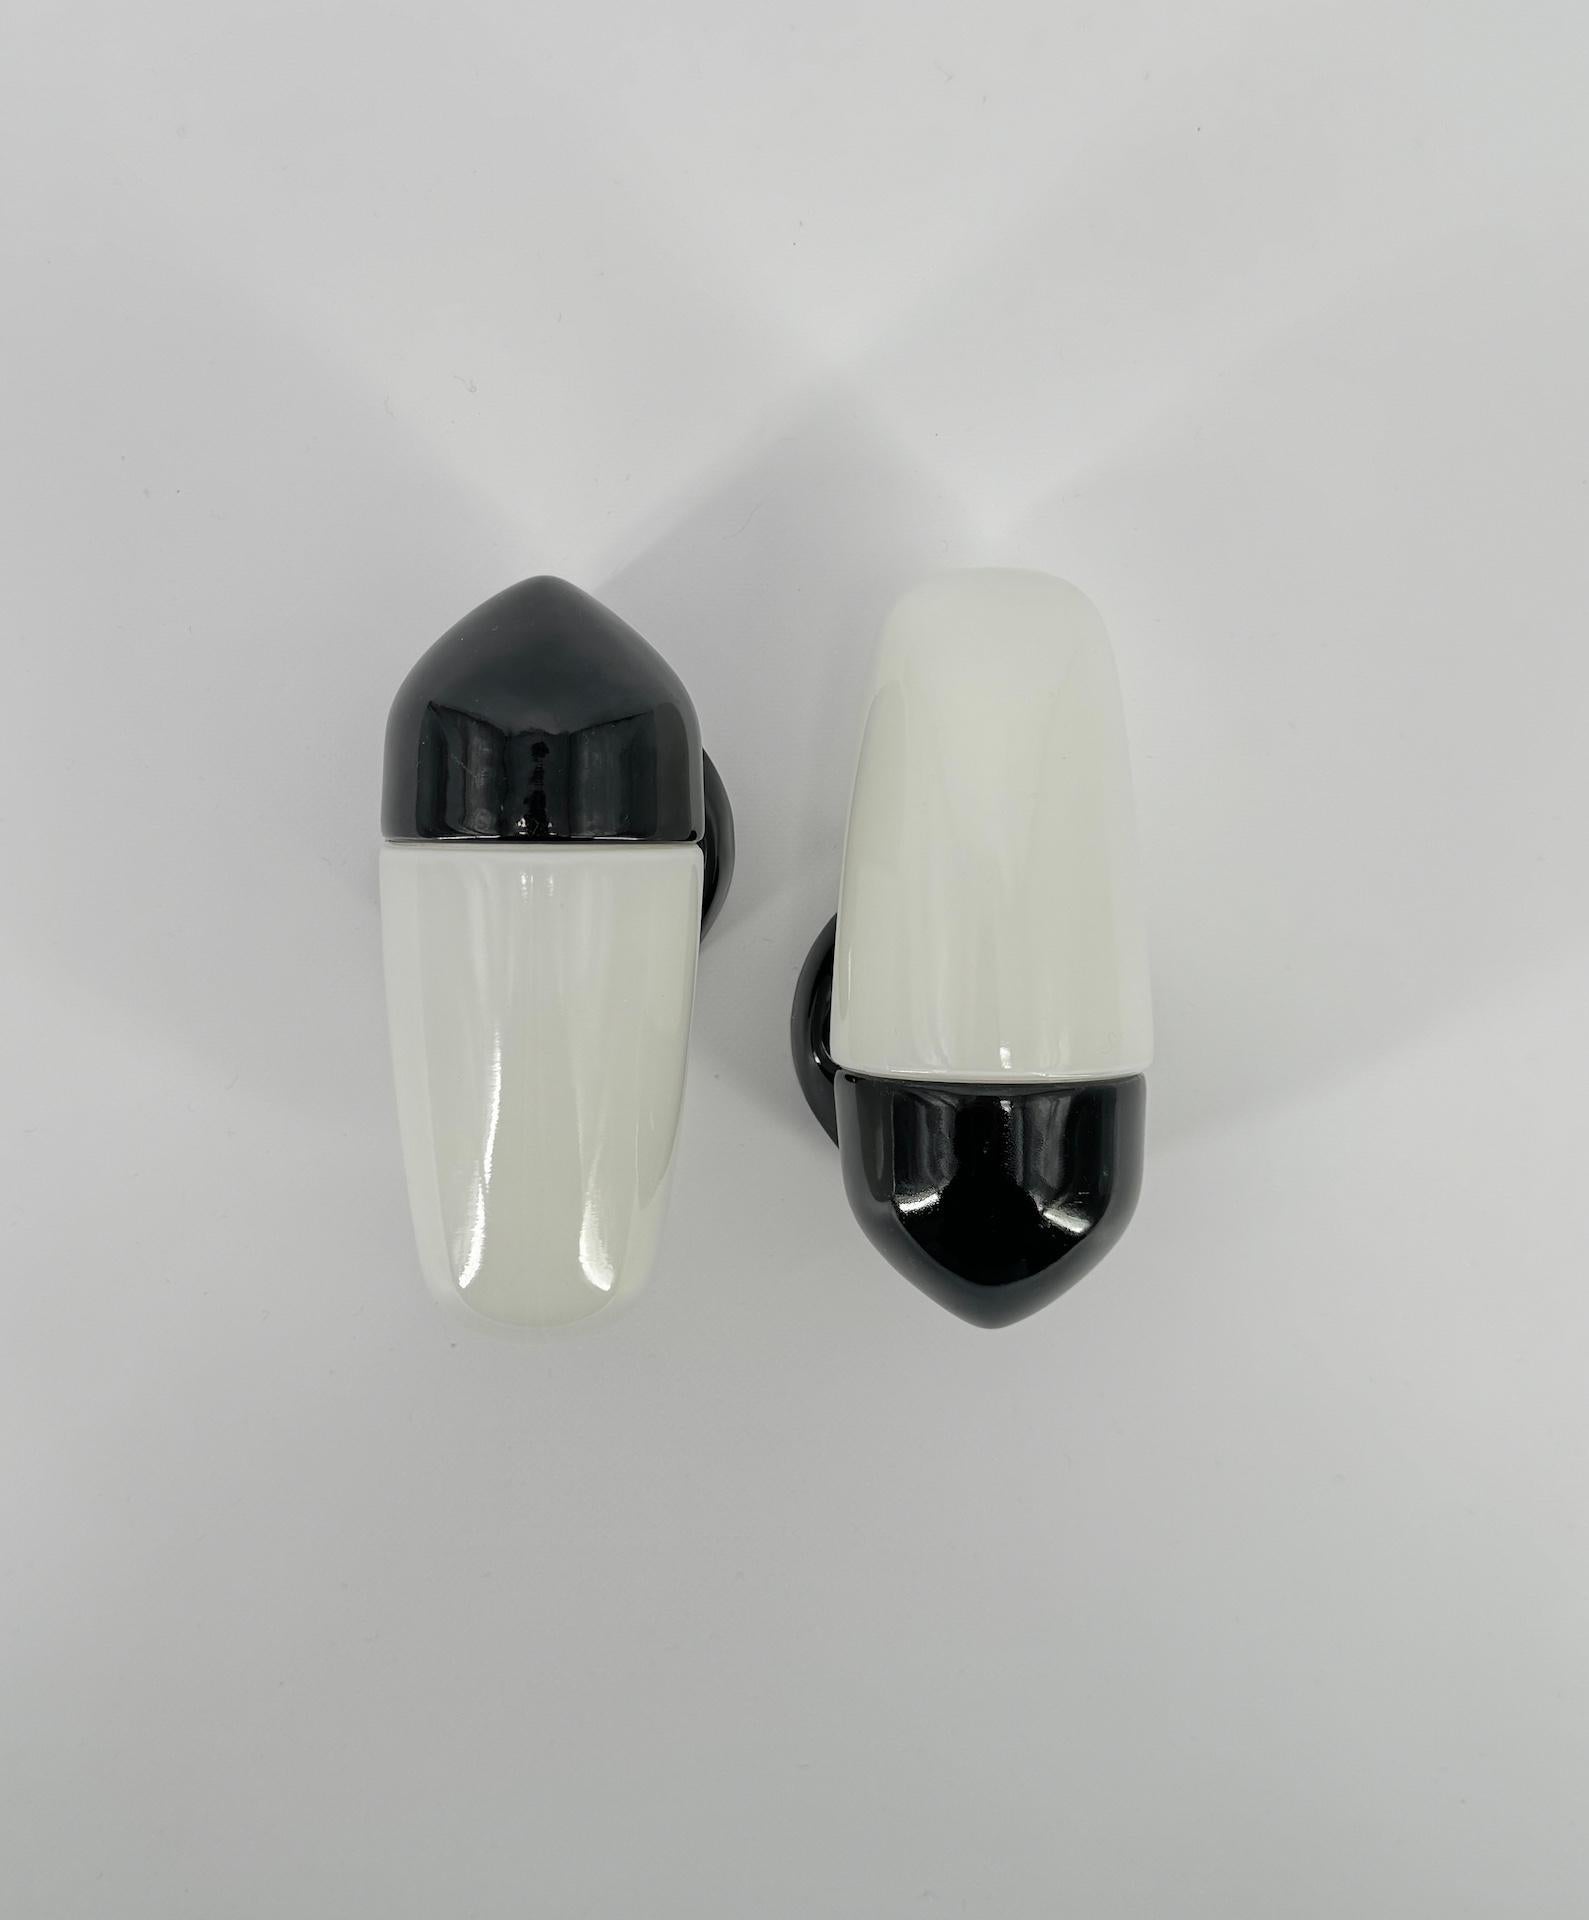 Les appliques en porcelaine noire et les abat-jours en verre opalin ont été conçus par le designer allemand Wilhelm Wagenfeld, qui a étudié à l'école du Bauhaus. 

Ce modèle date de 1958 et présente des lignes épurées, rondes et élégantes, un design